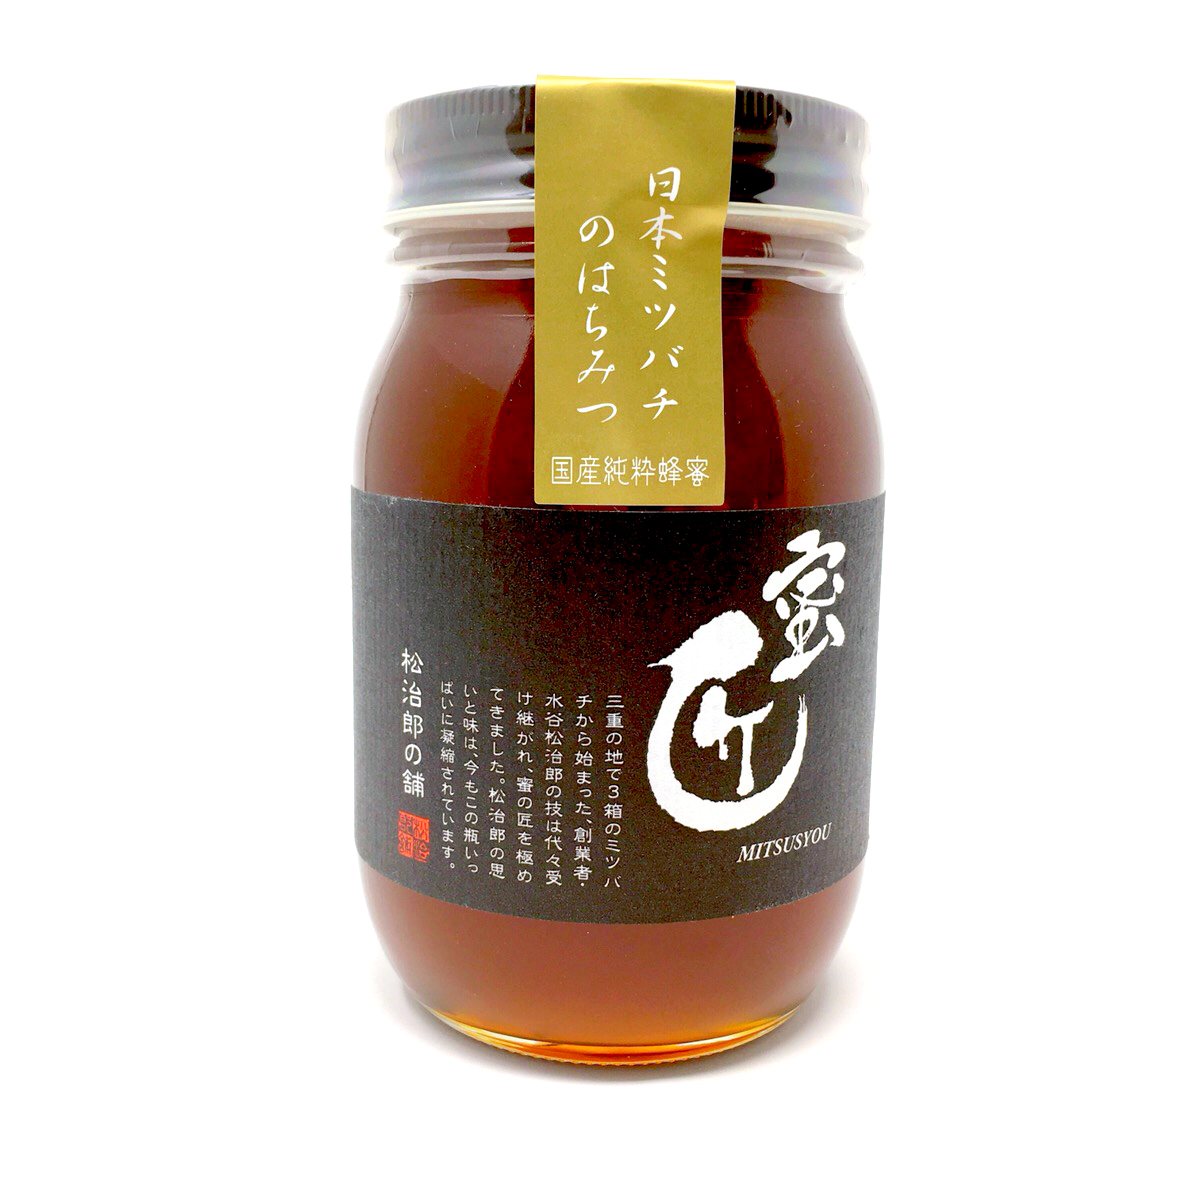 蜜匠 国産 日本ミツバチのはちみつ | 国産はちみつ 蜜匠®️ | 国産